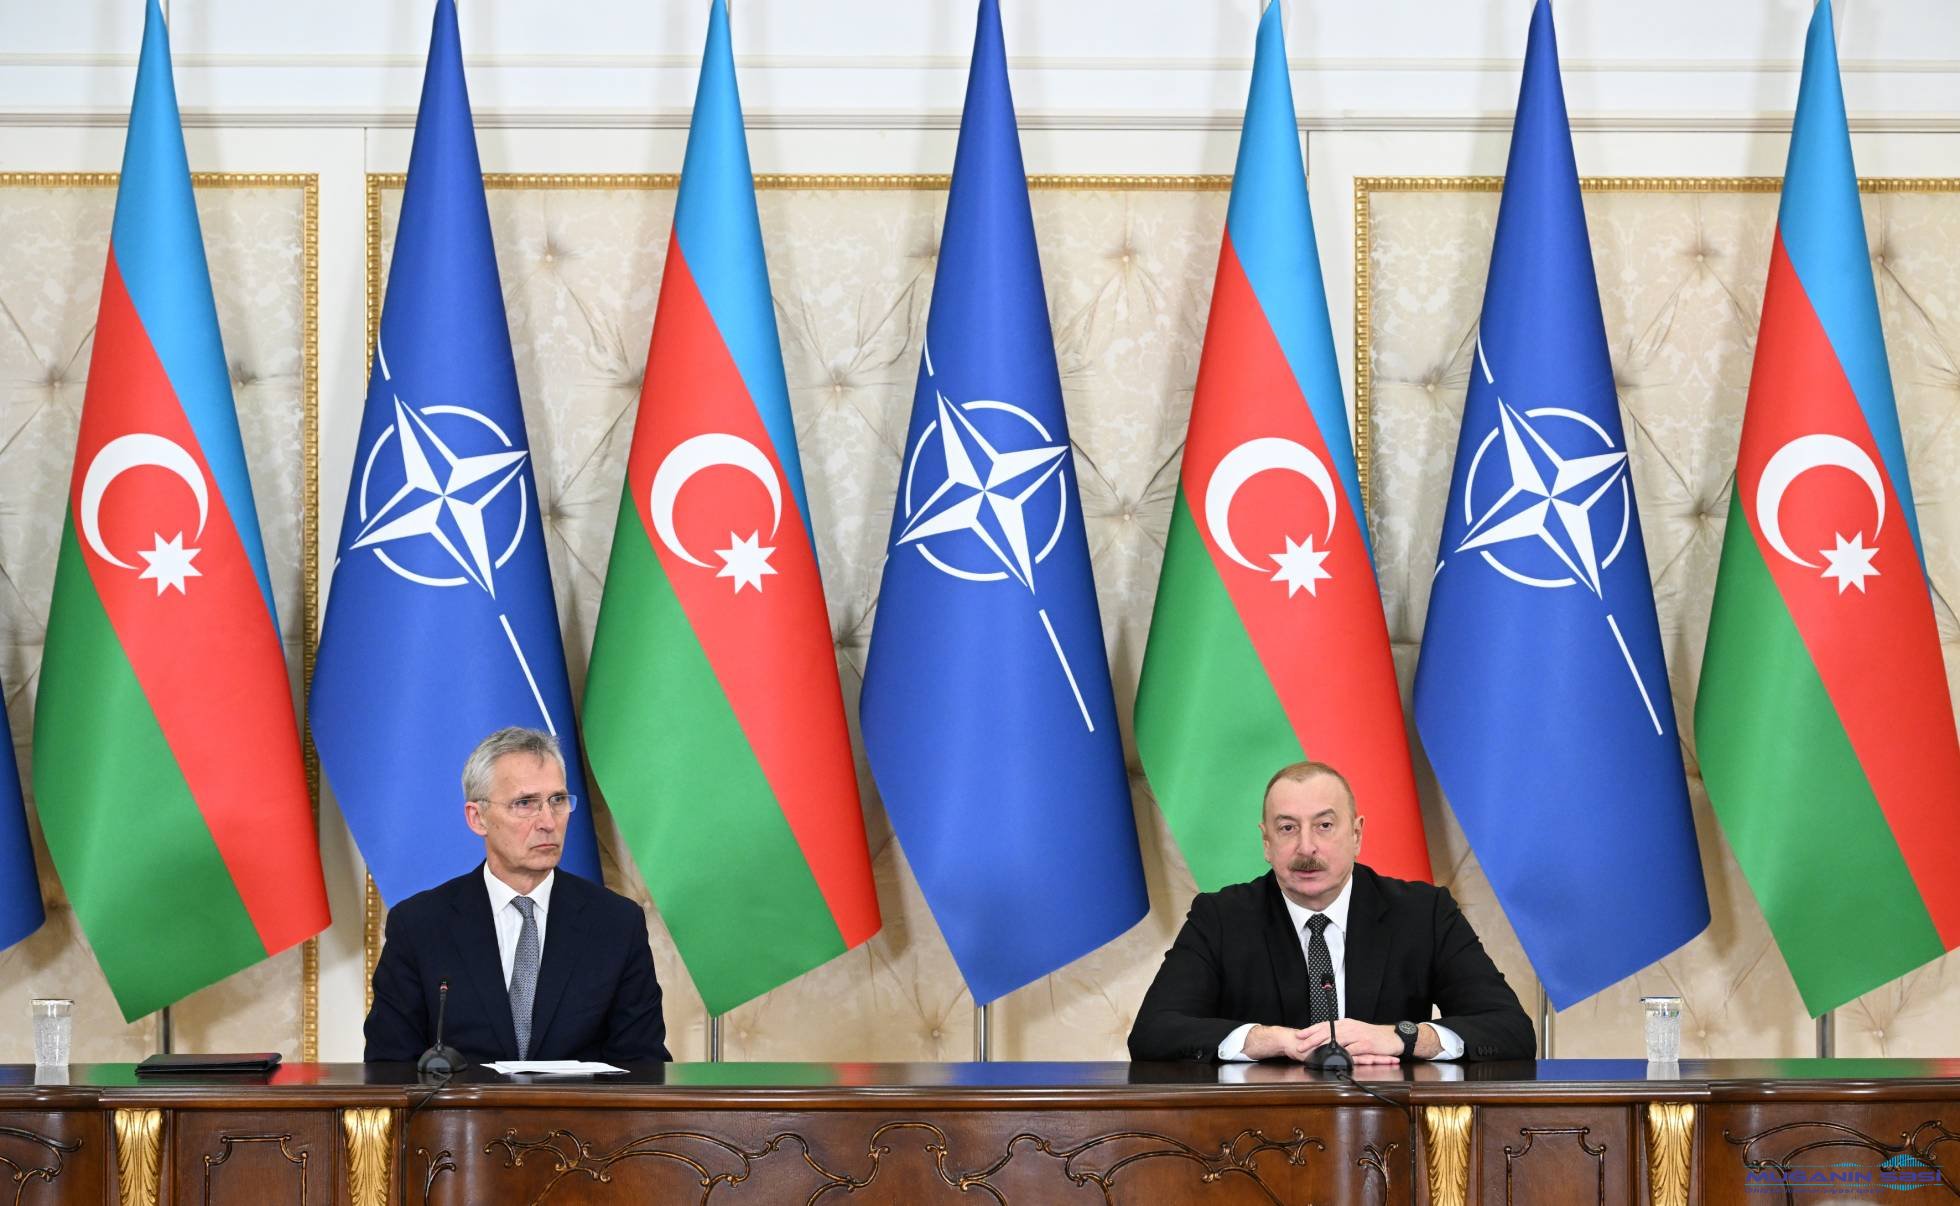 Azərbaycan – NATO:  faydalı tərəfdaşlıq və səmimi dialoq